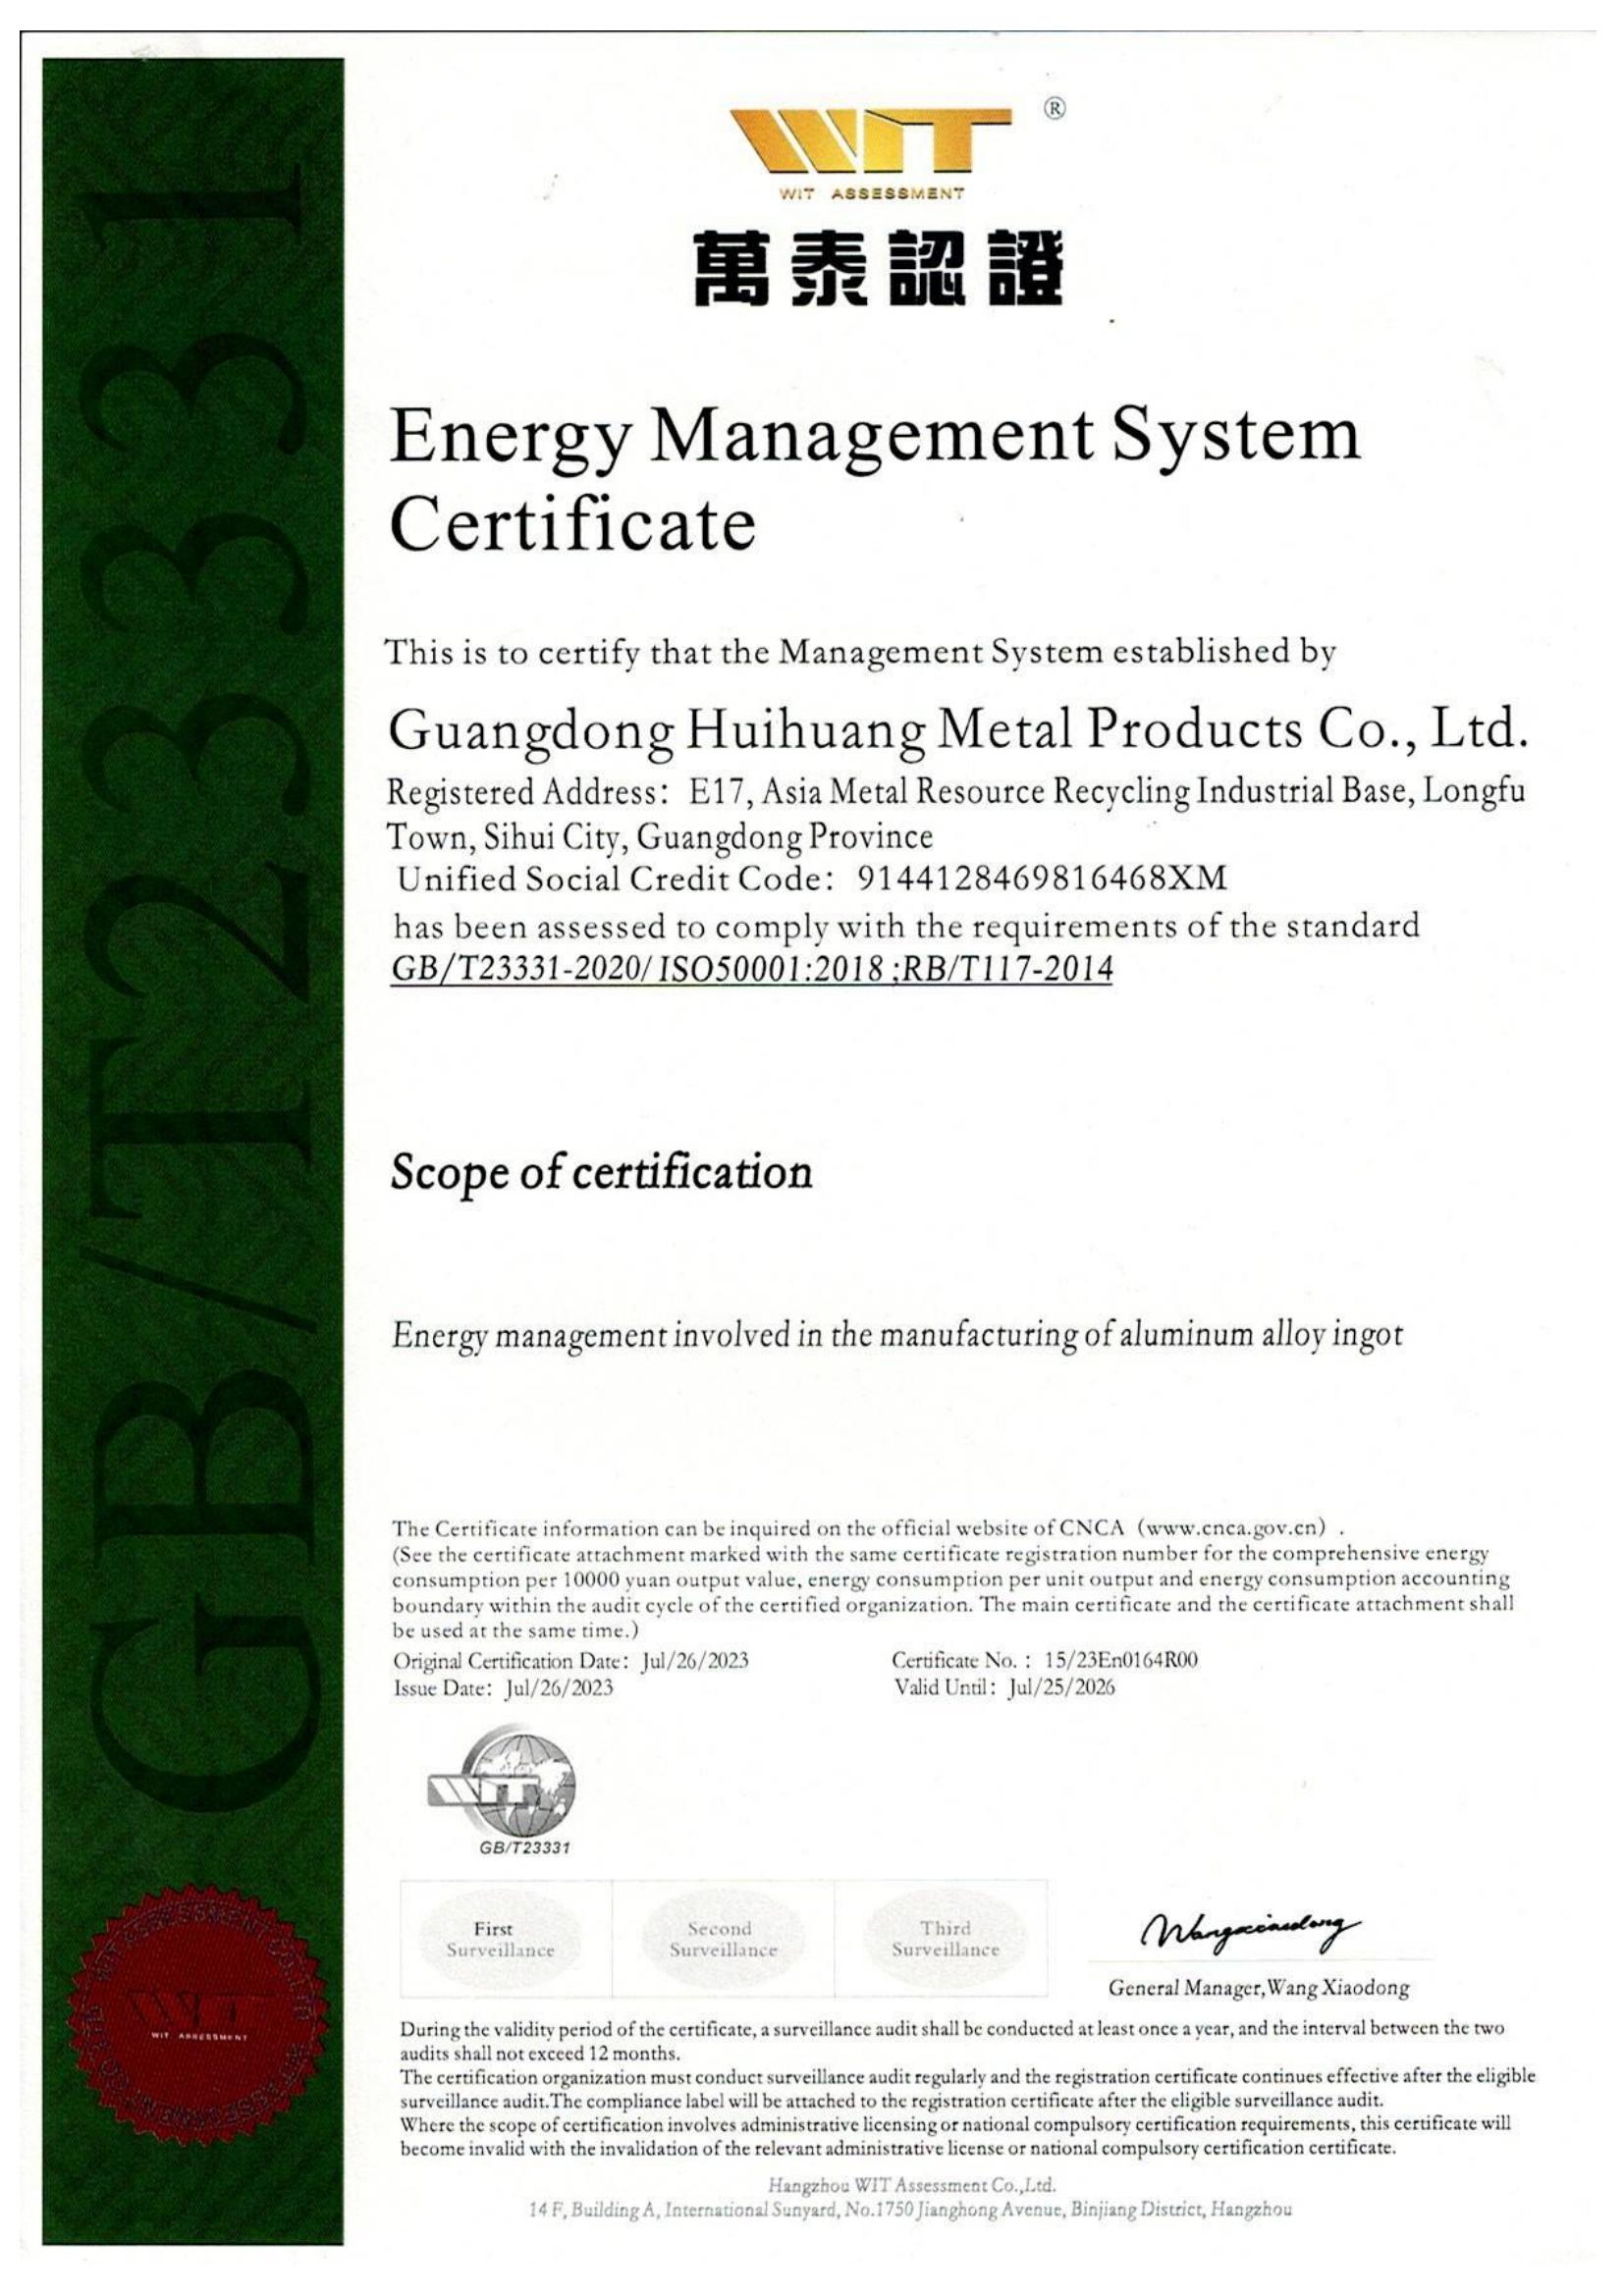 能源管理体系认证证书-有效期2026.7.25(1)_01.jpg